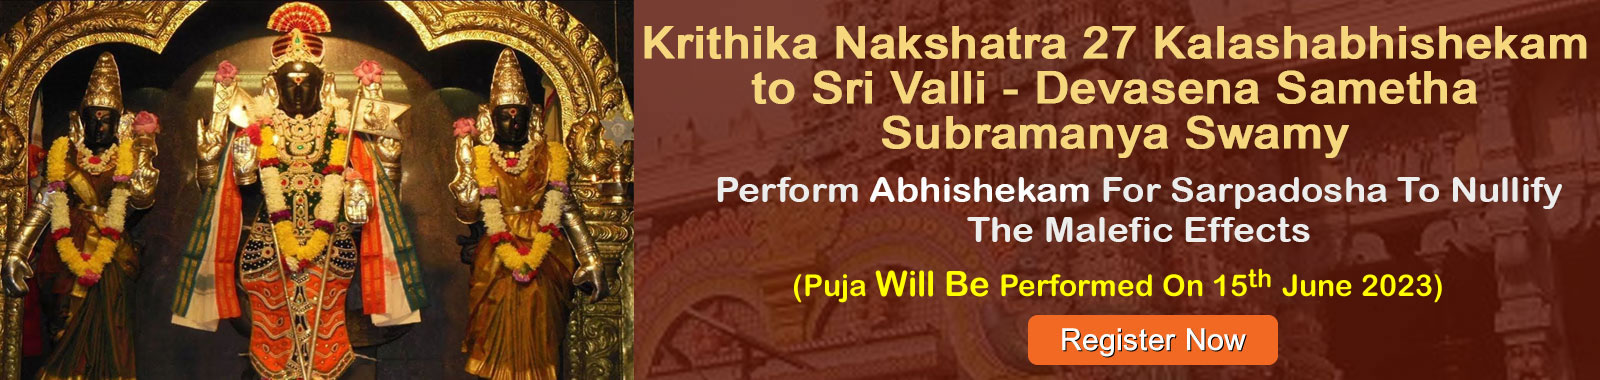 Krithika Nakshatra 27 Kalashabhishekam to Sri Valli - Devasena Sametha Subramanya Swamy